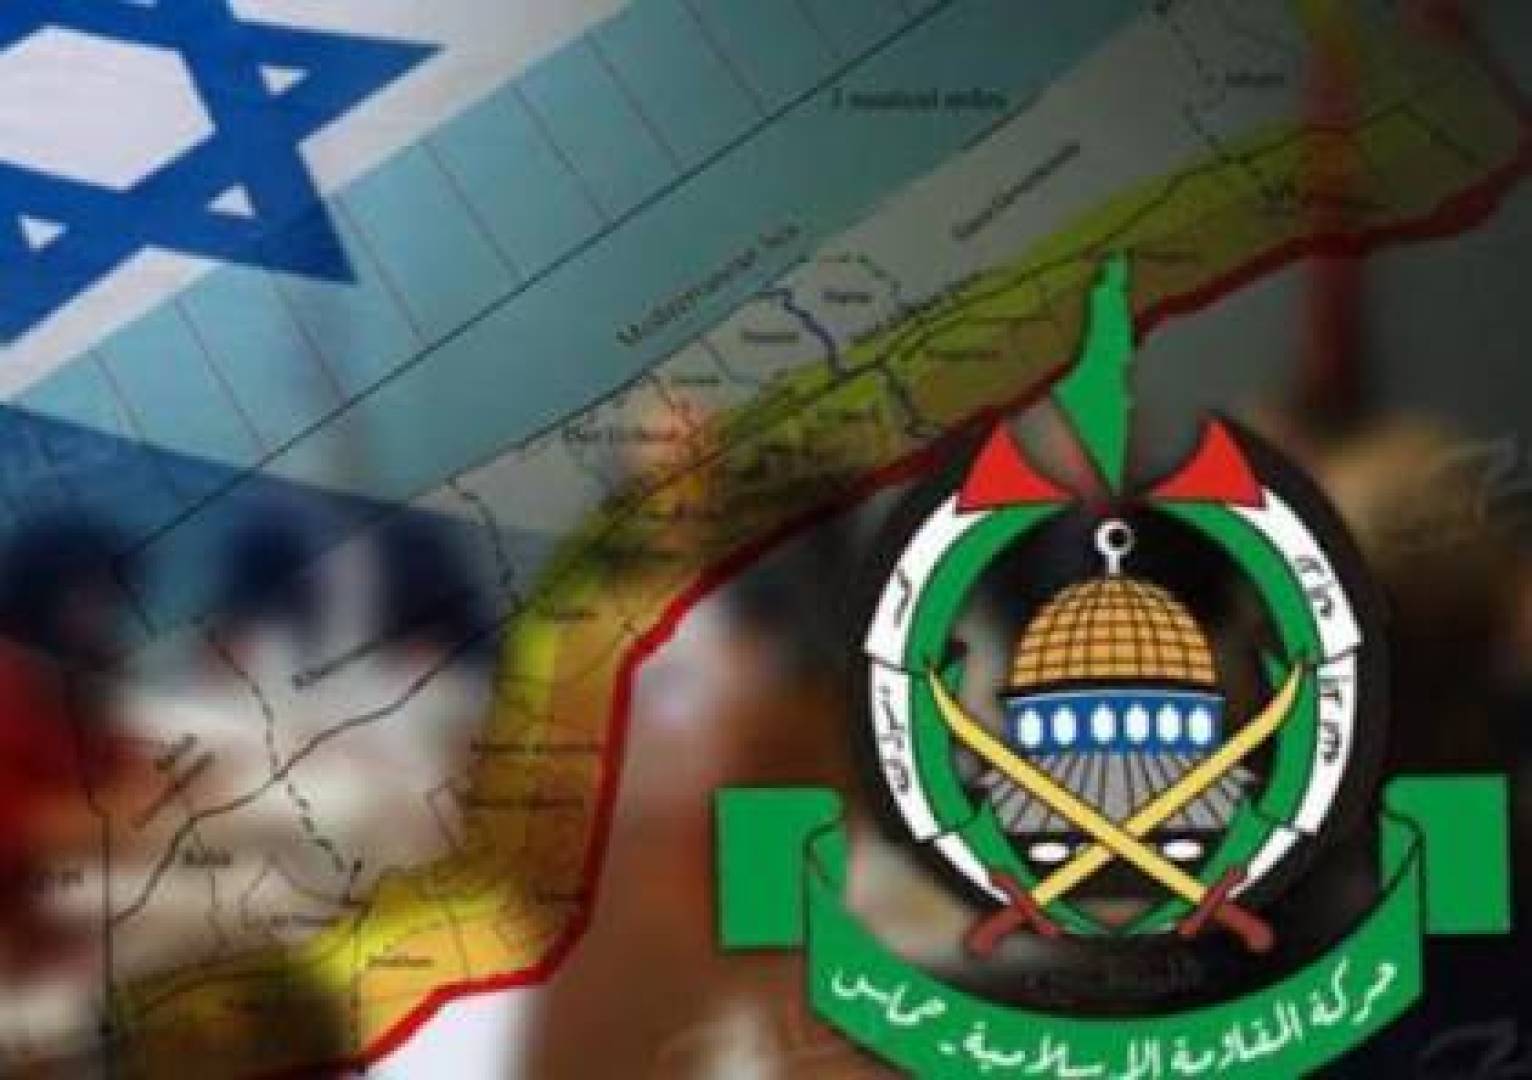 سي إن إن: اتفاق إطاري يضمن وقف إطلاق النار بقطاع غزة وإطلاق سراح الرهائن